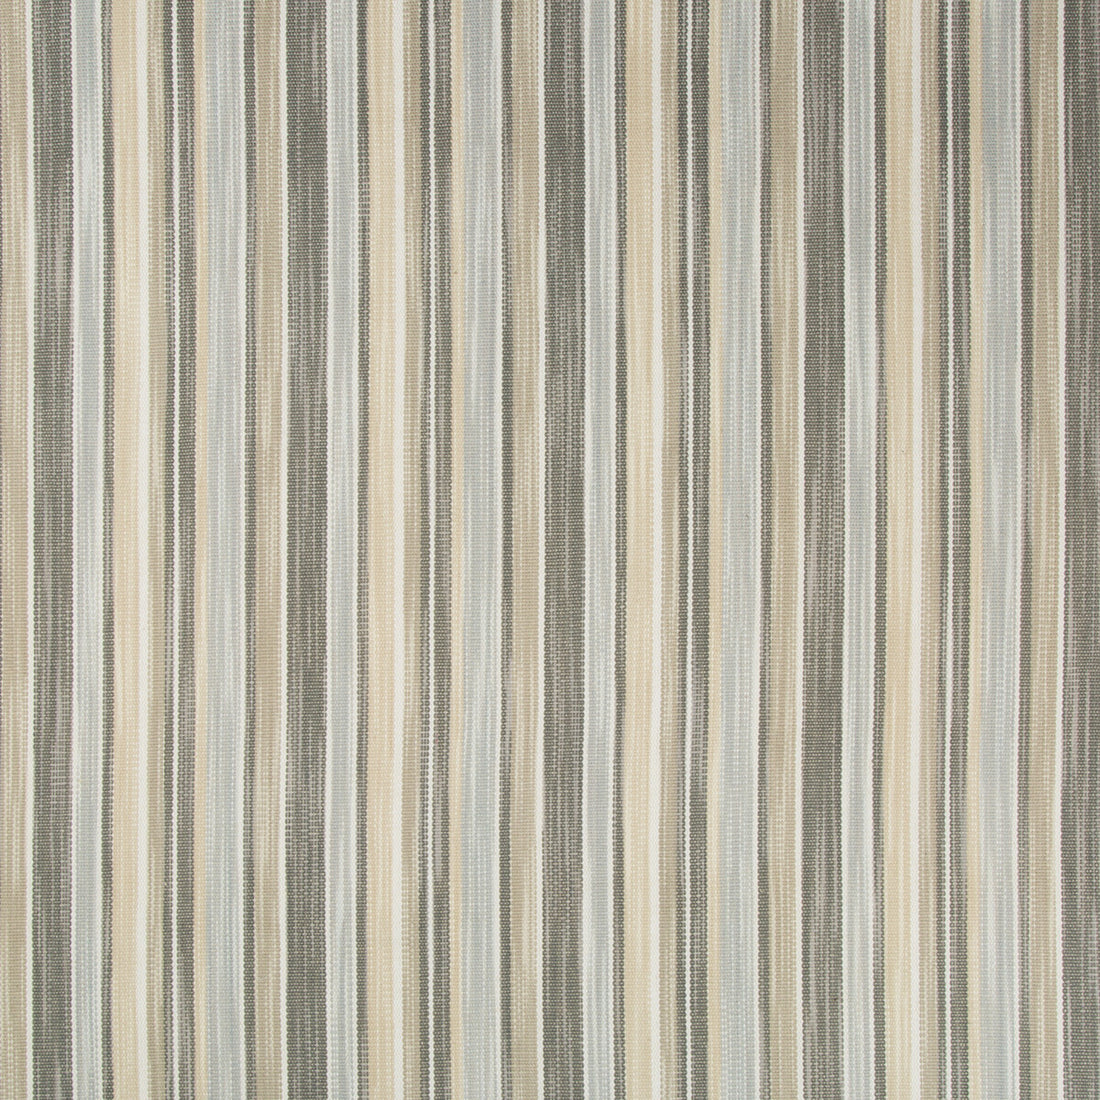 Kravet Basics fabric in 34898-1621 color - pattern 34898.1621.0 - by Kravet Basics